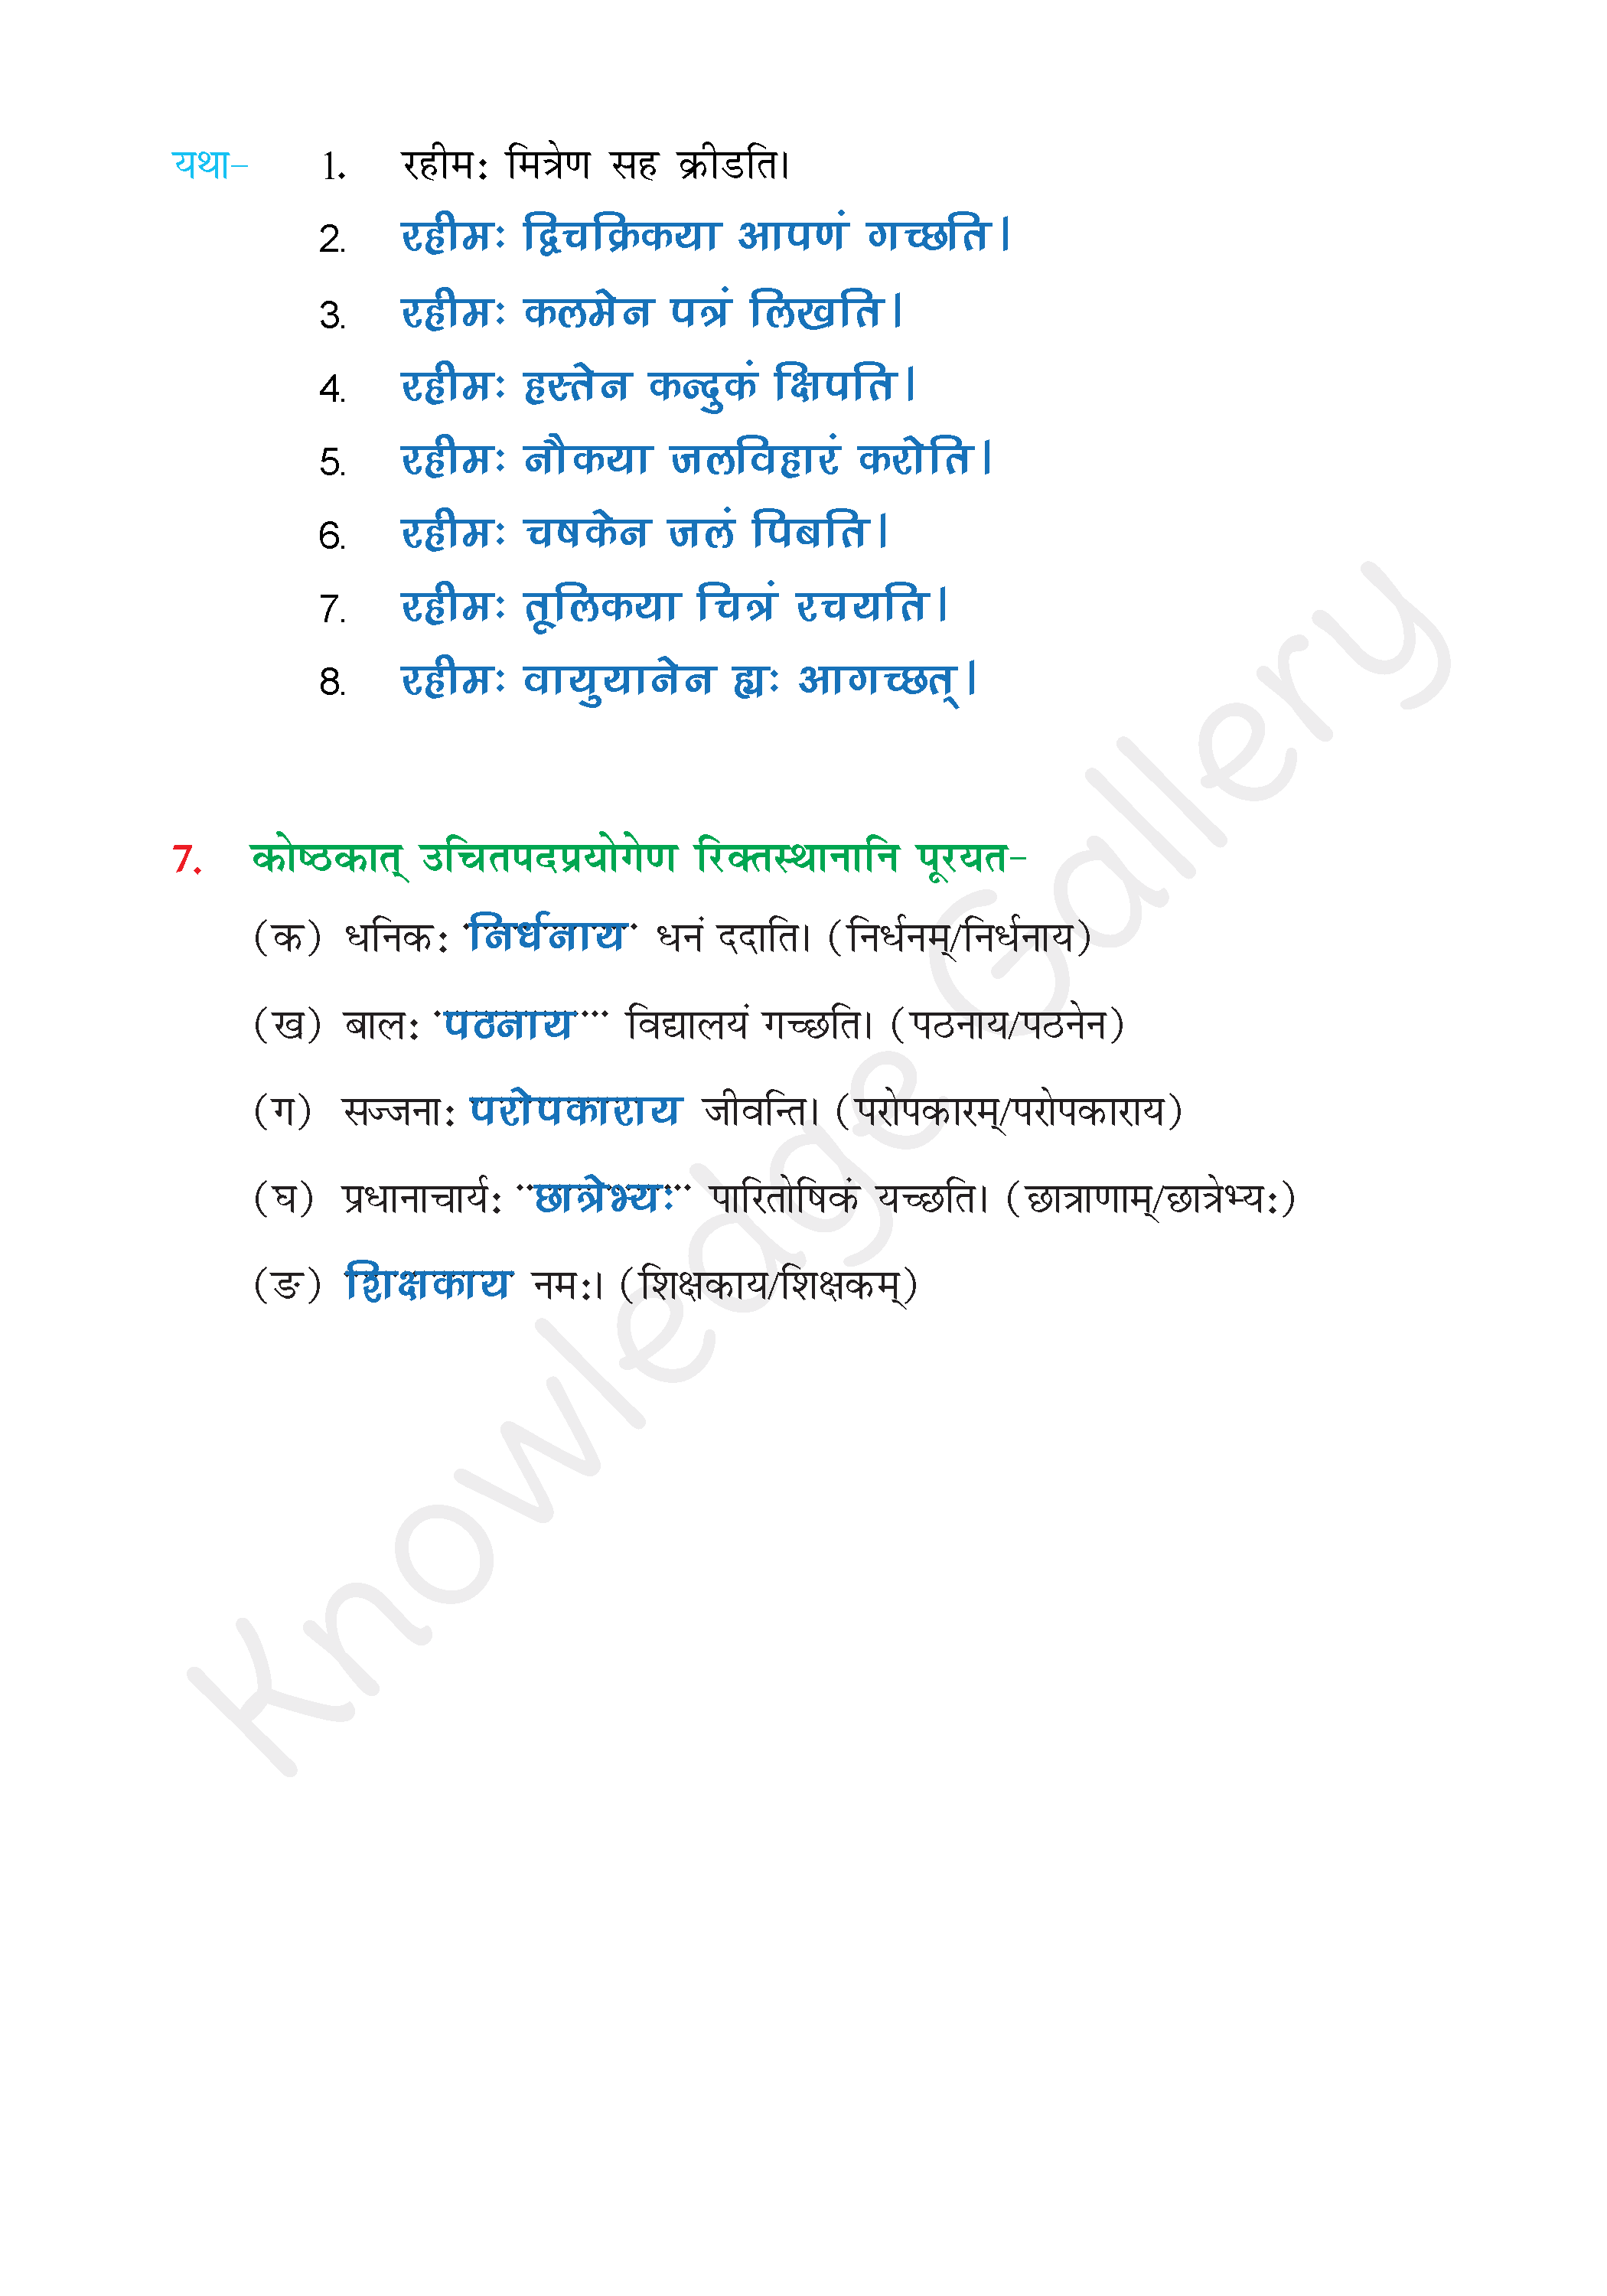 NCERT Solution For Class 6 Sanskrit Chapter 6 part 6